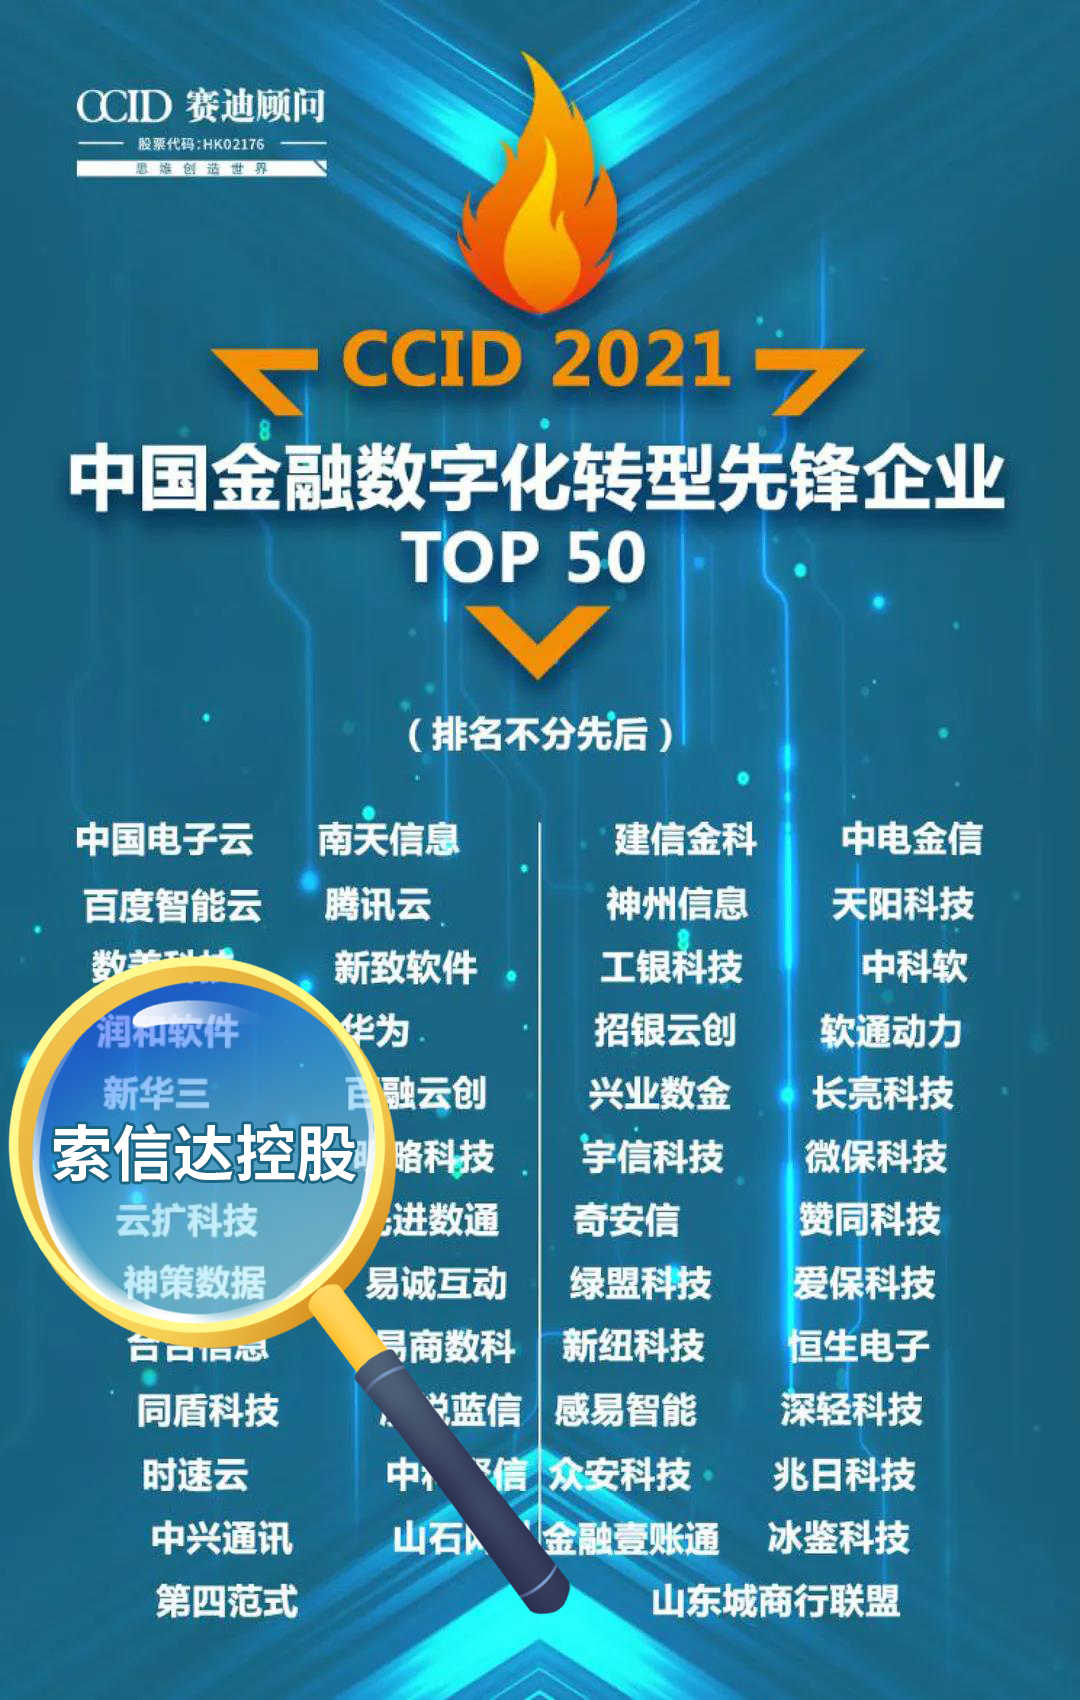 中国金融数字化转型先锋企业TOP50.jpg